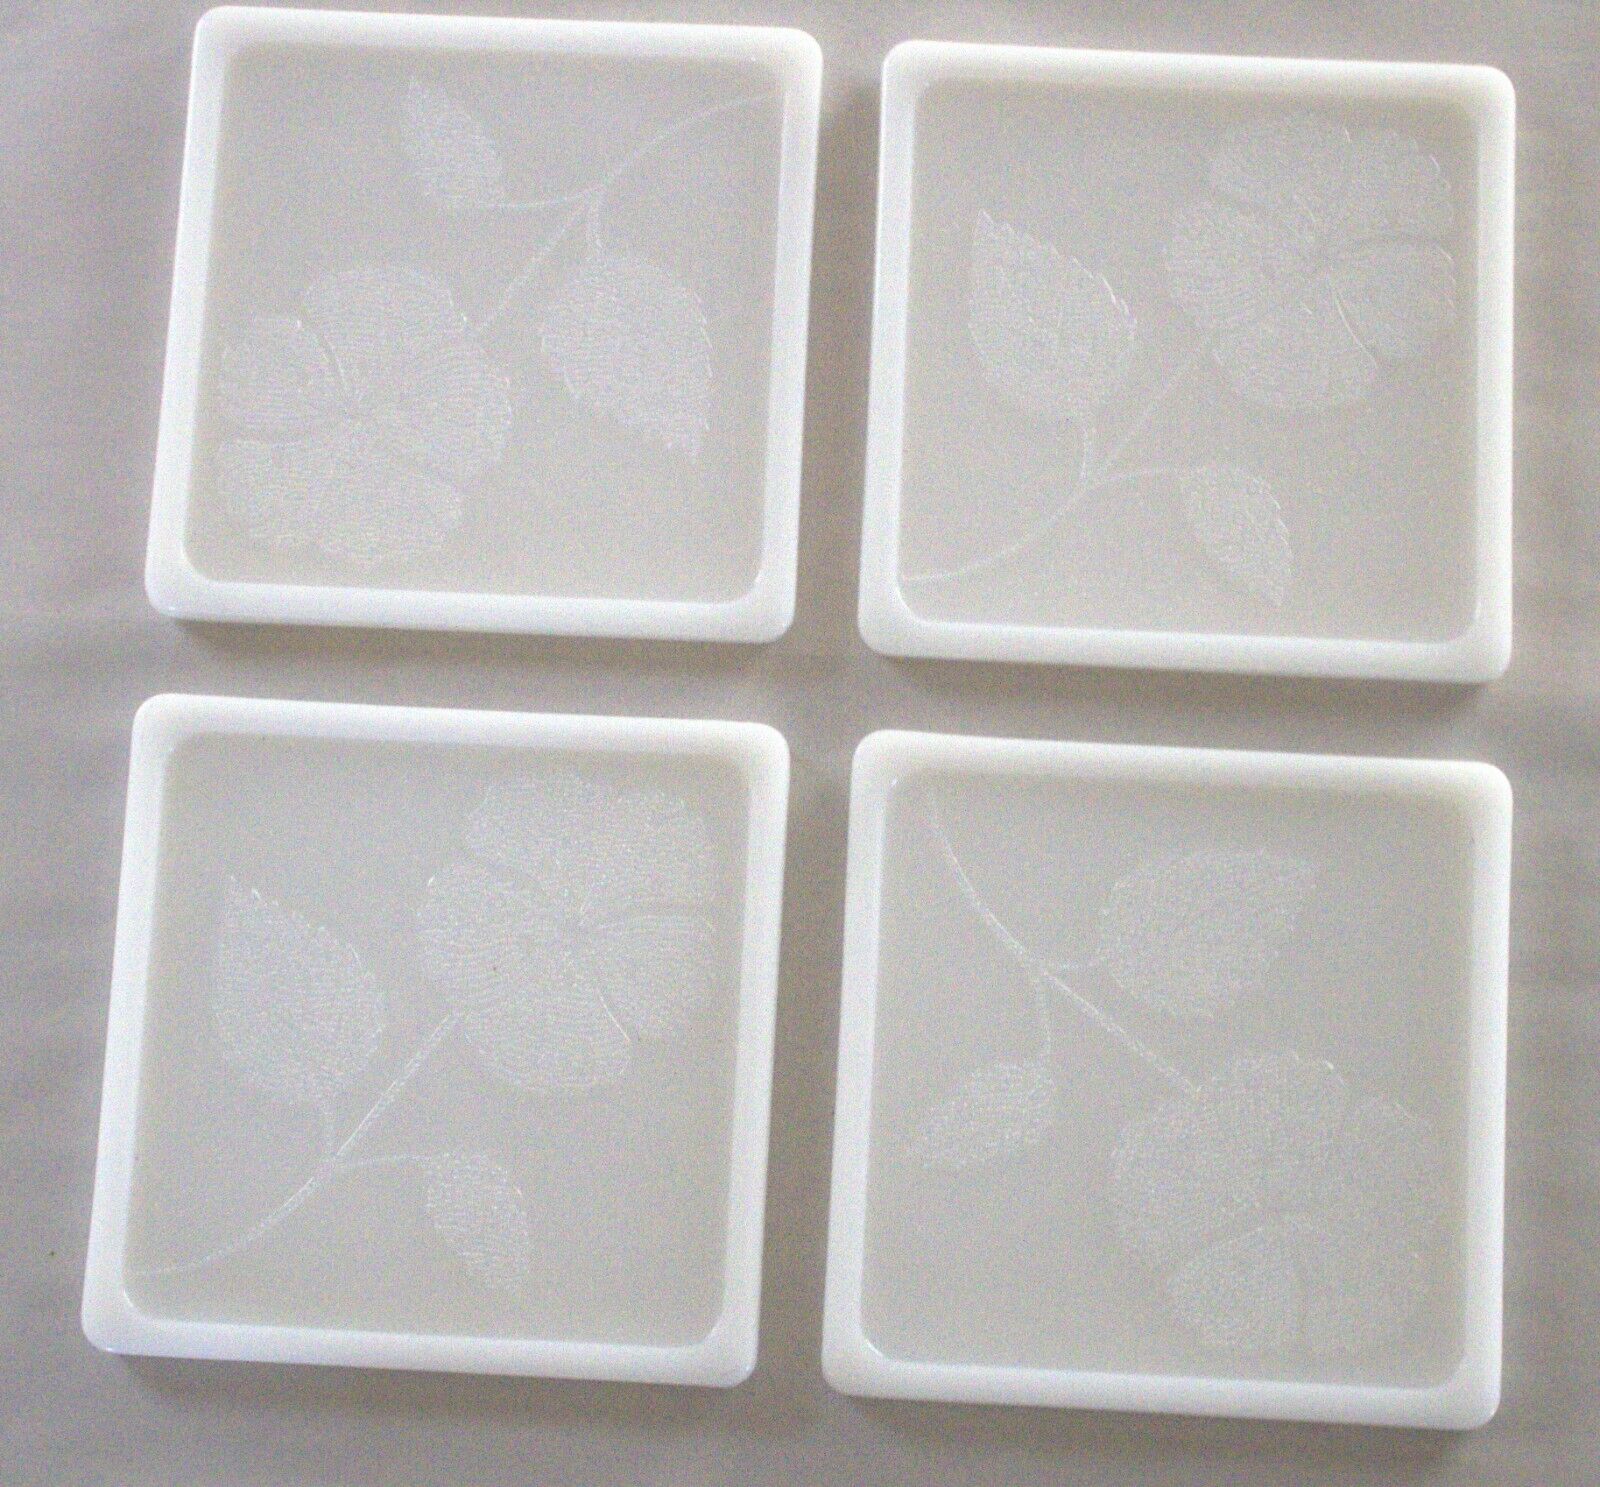 4 Vintage Embossed Milk Glass Tiles Trivets 5-5/8